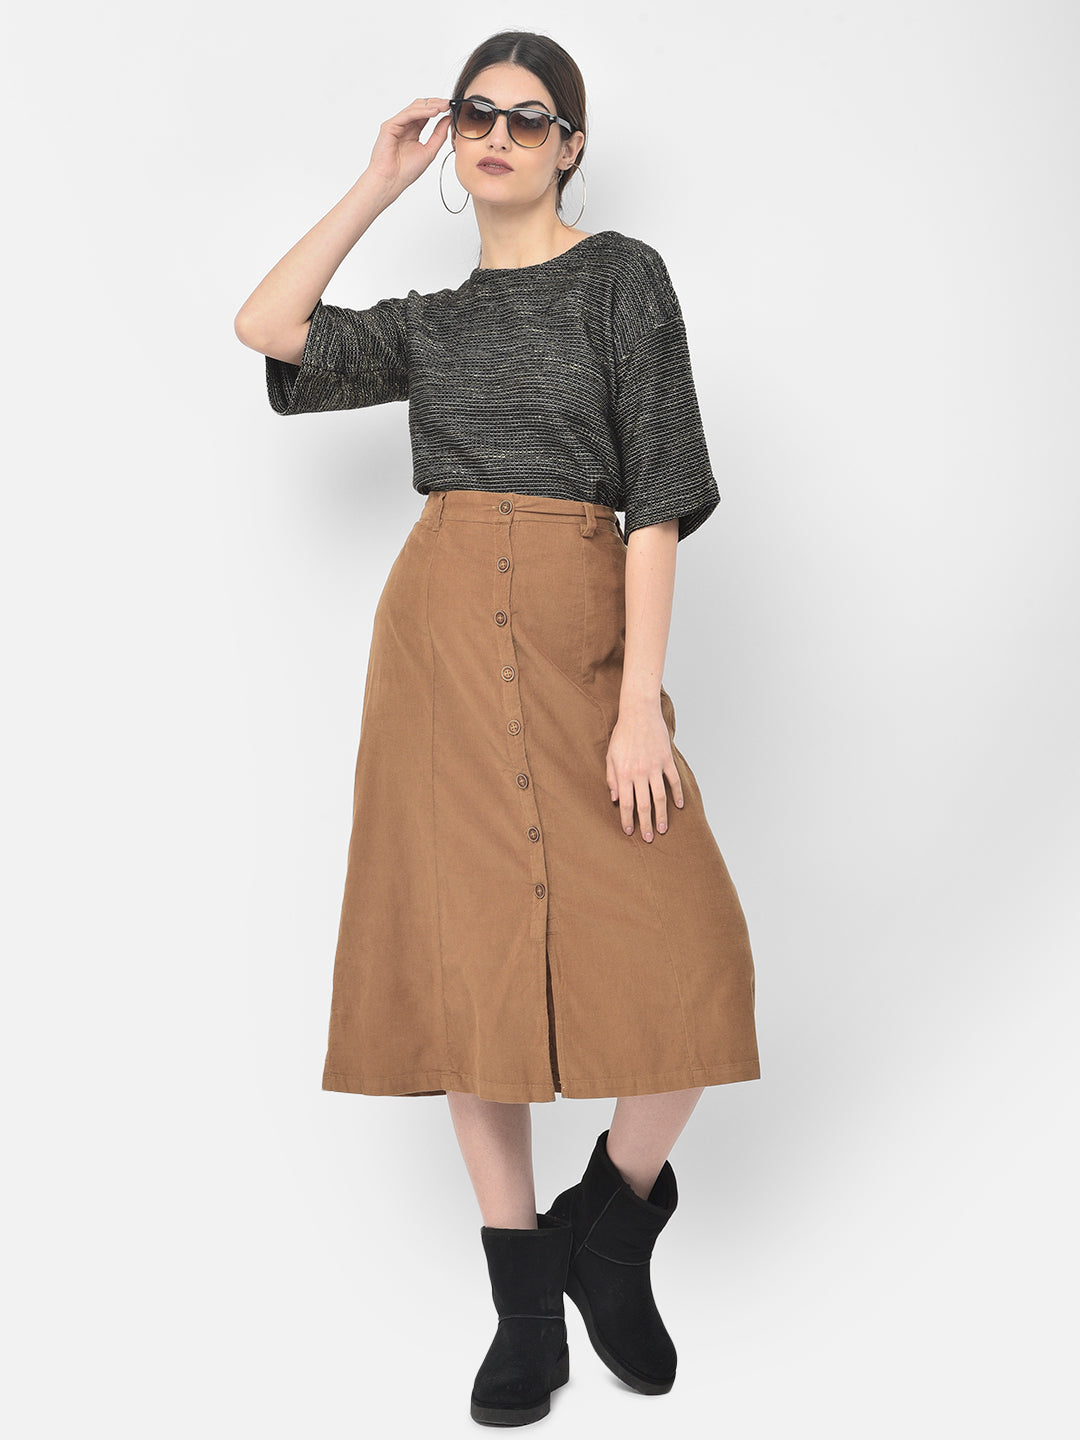 Brown A-Line Skirt - Women Skirts